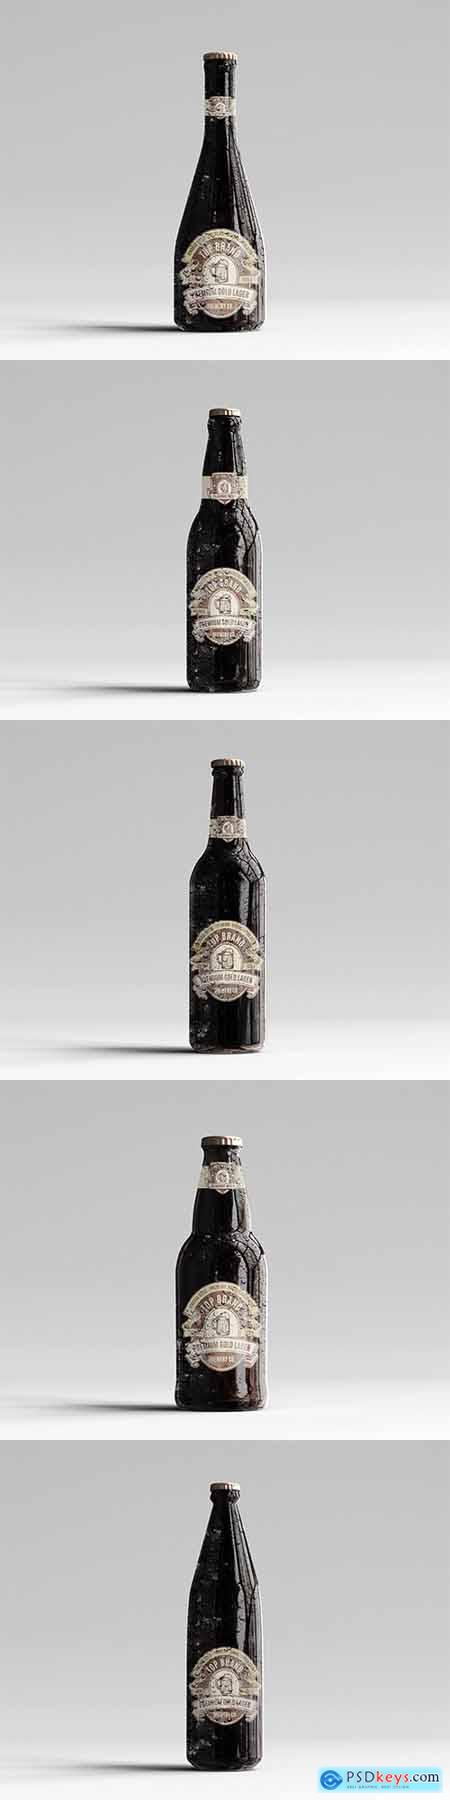 Amber Glass Beer Bottle Mockup Pack